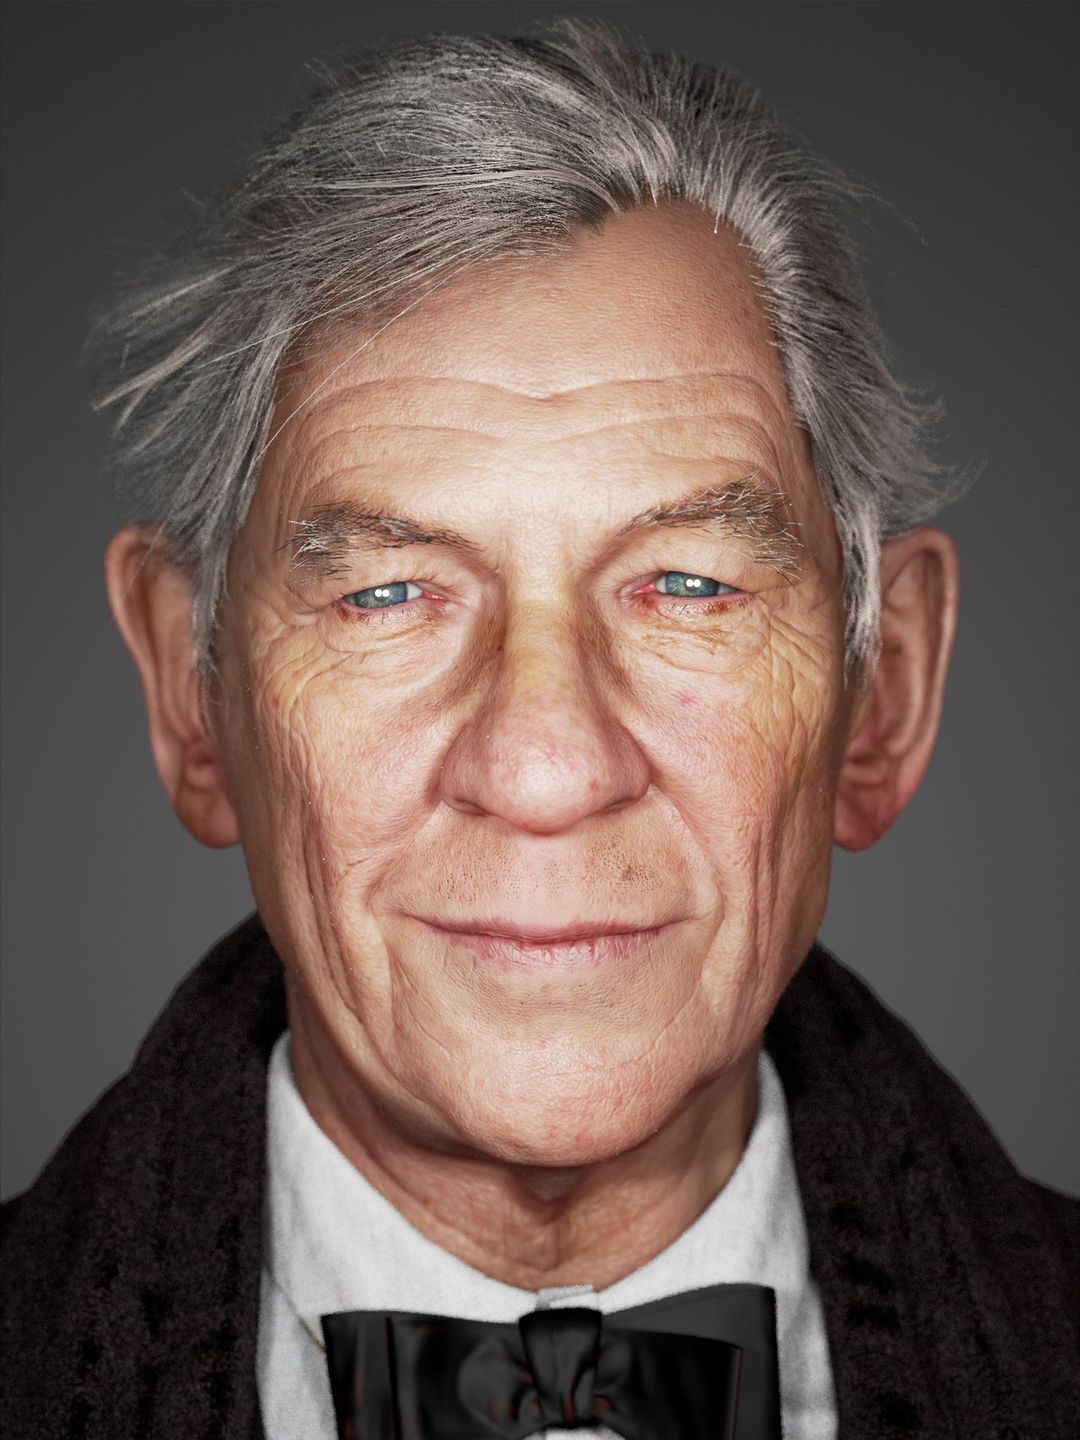 Ian McKellen current look